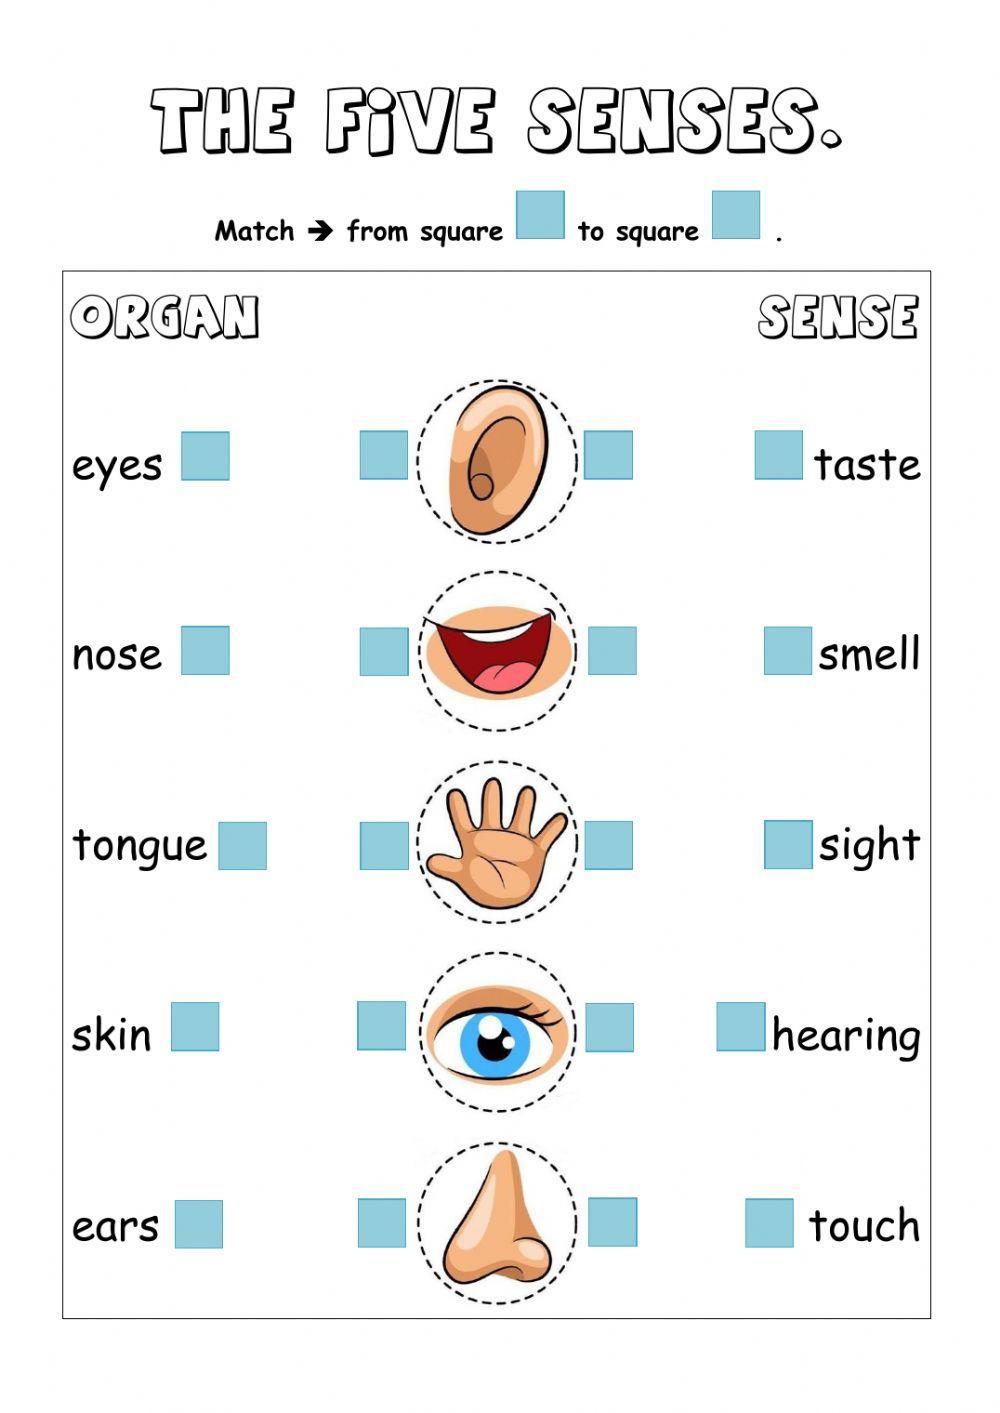 The five senses.